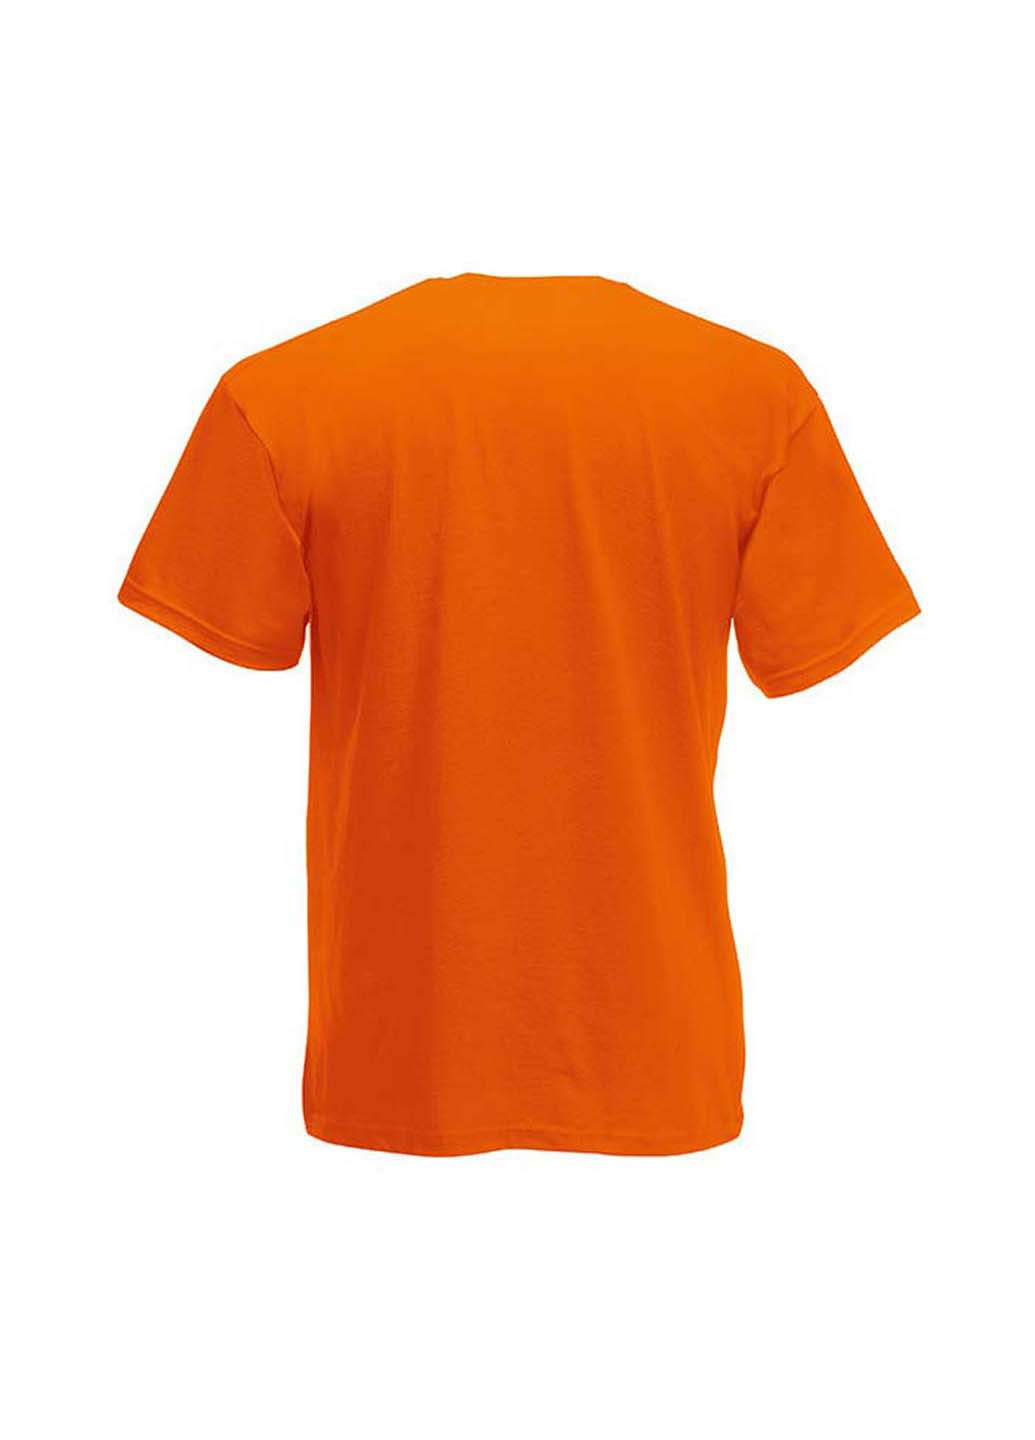 Оранжевая демисезонная футболка Fruit of the Loom 61019044164